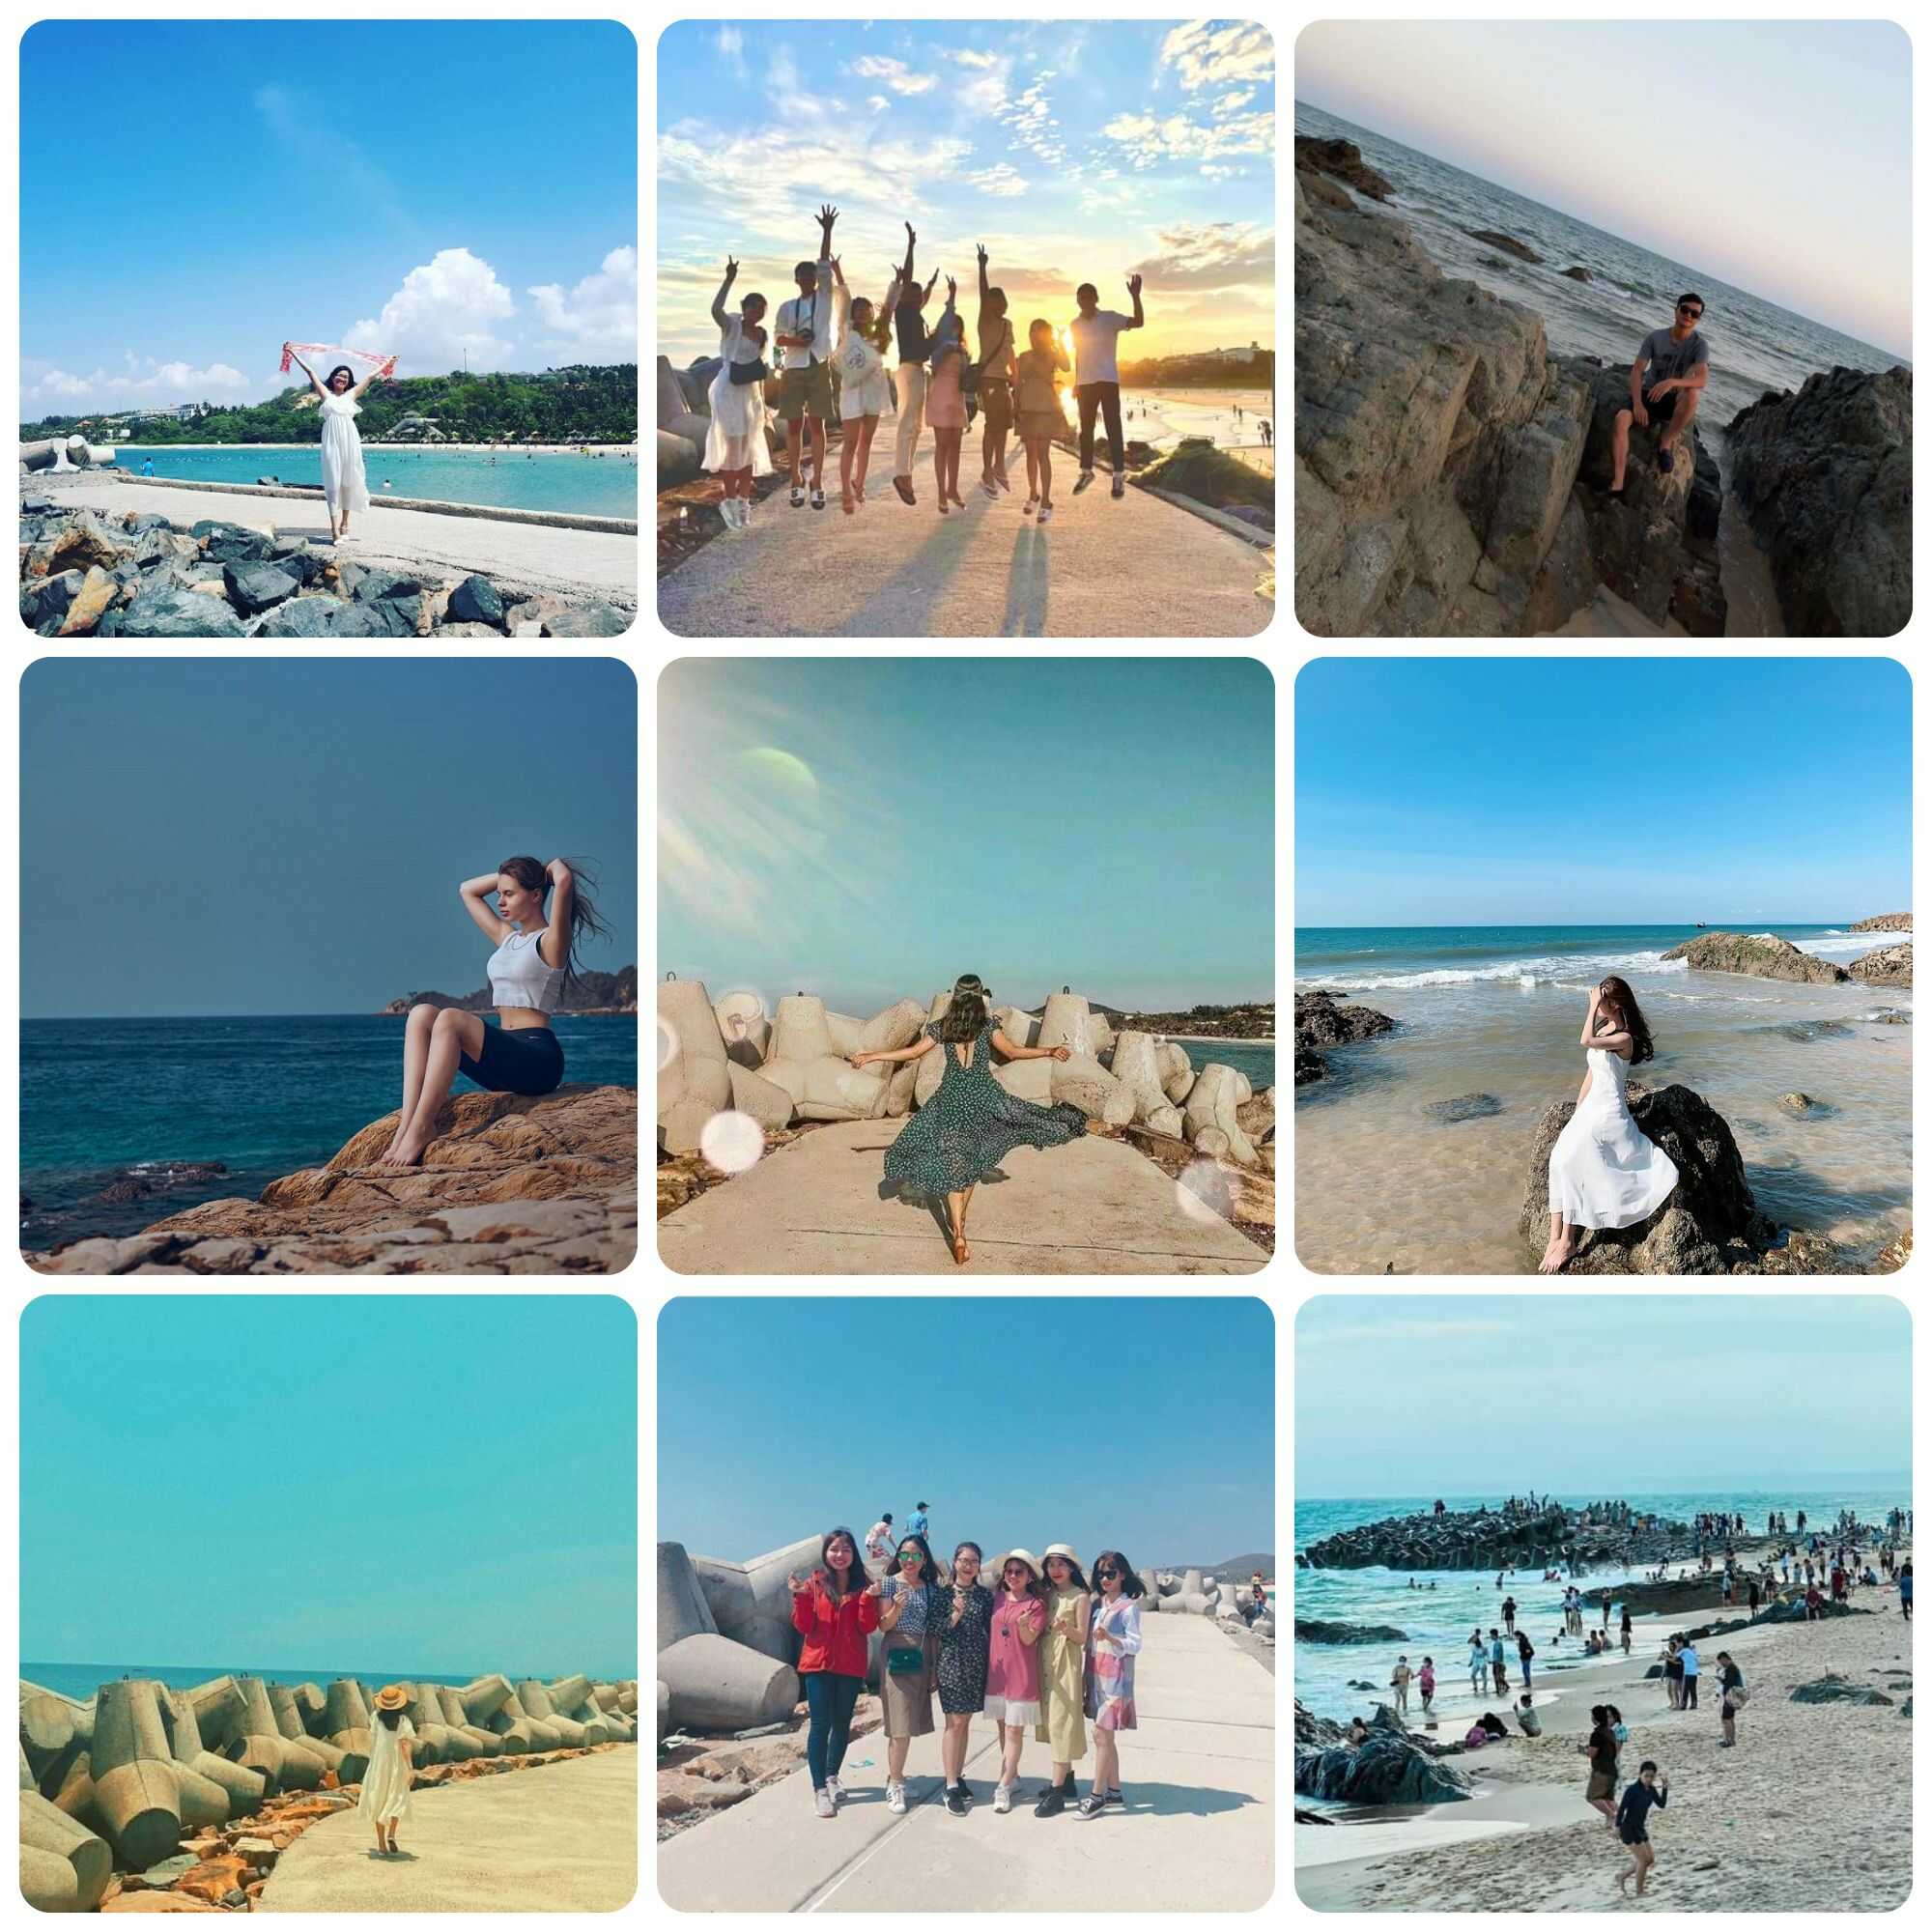 Khám phá bãi biển Đá Ông Địa - Nơi tuyệt vời cho những bức ảnh hoàn hảo